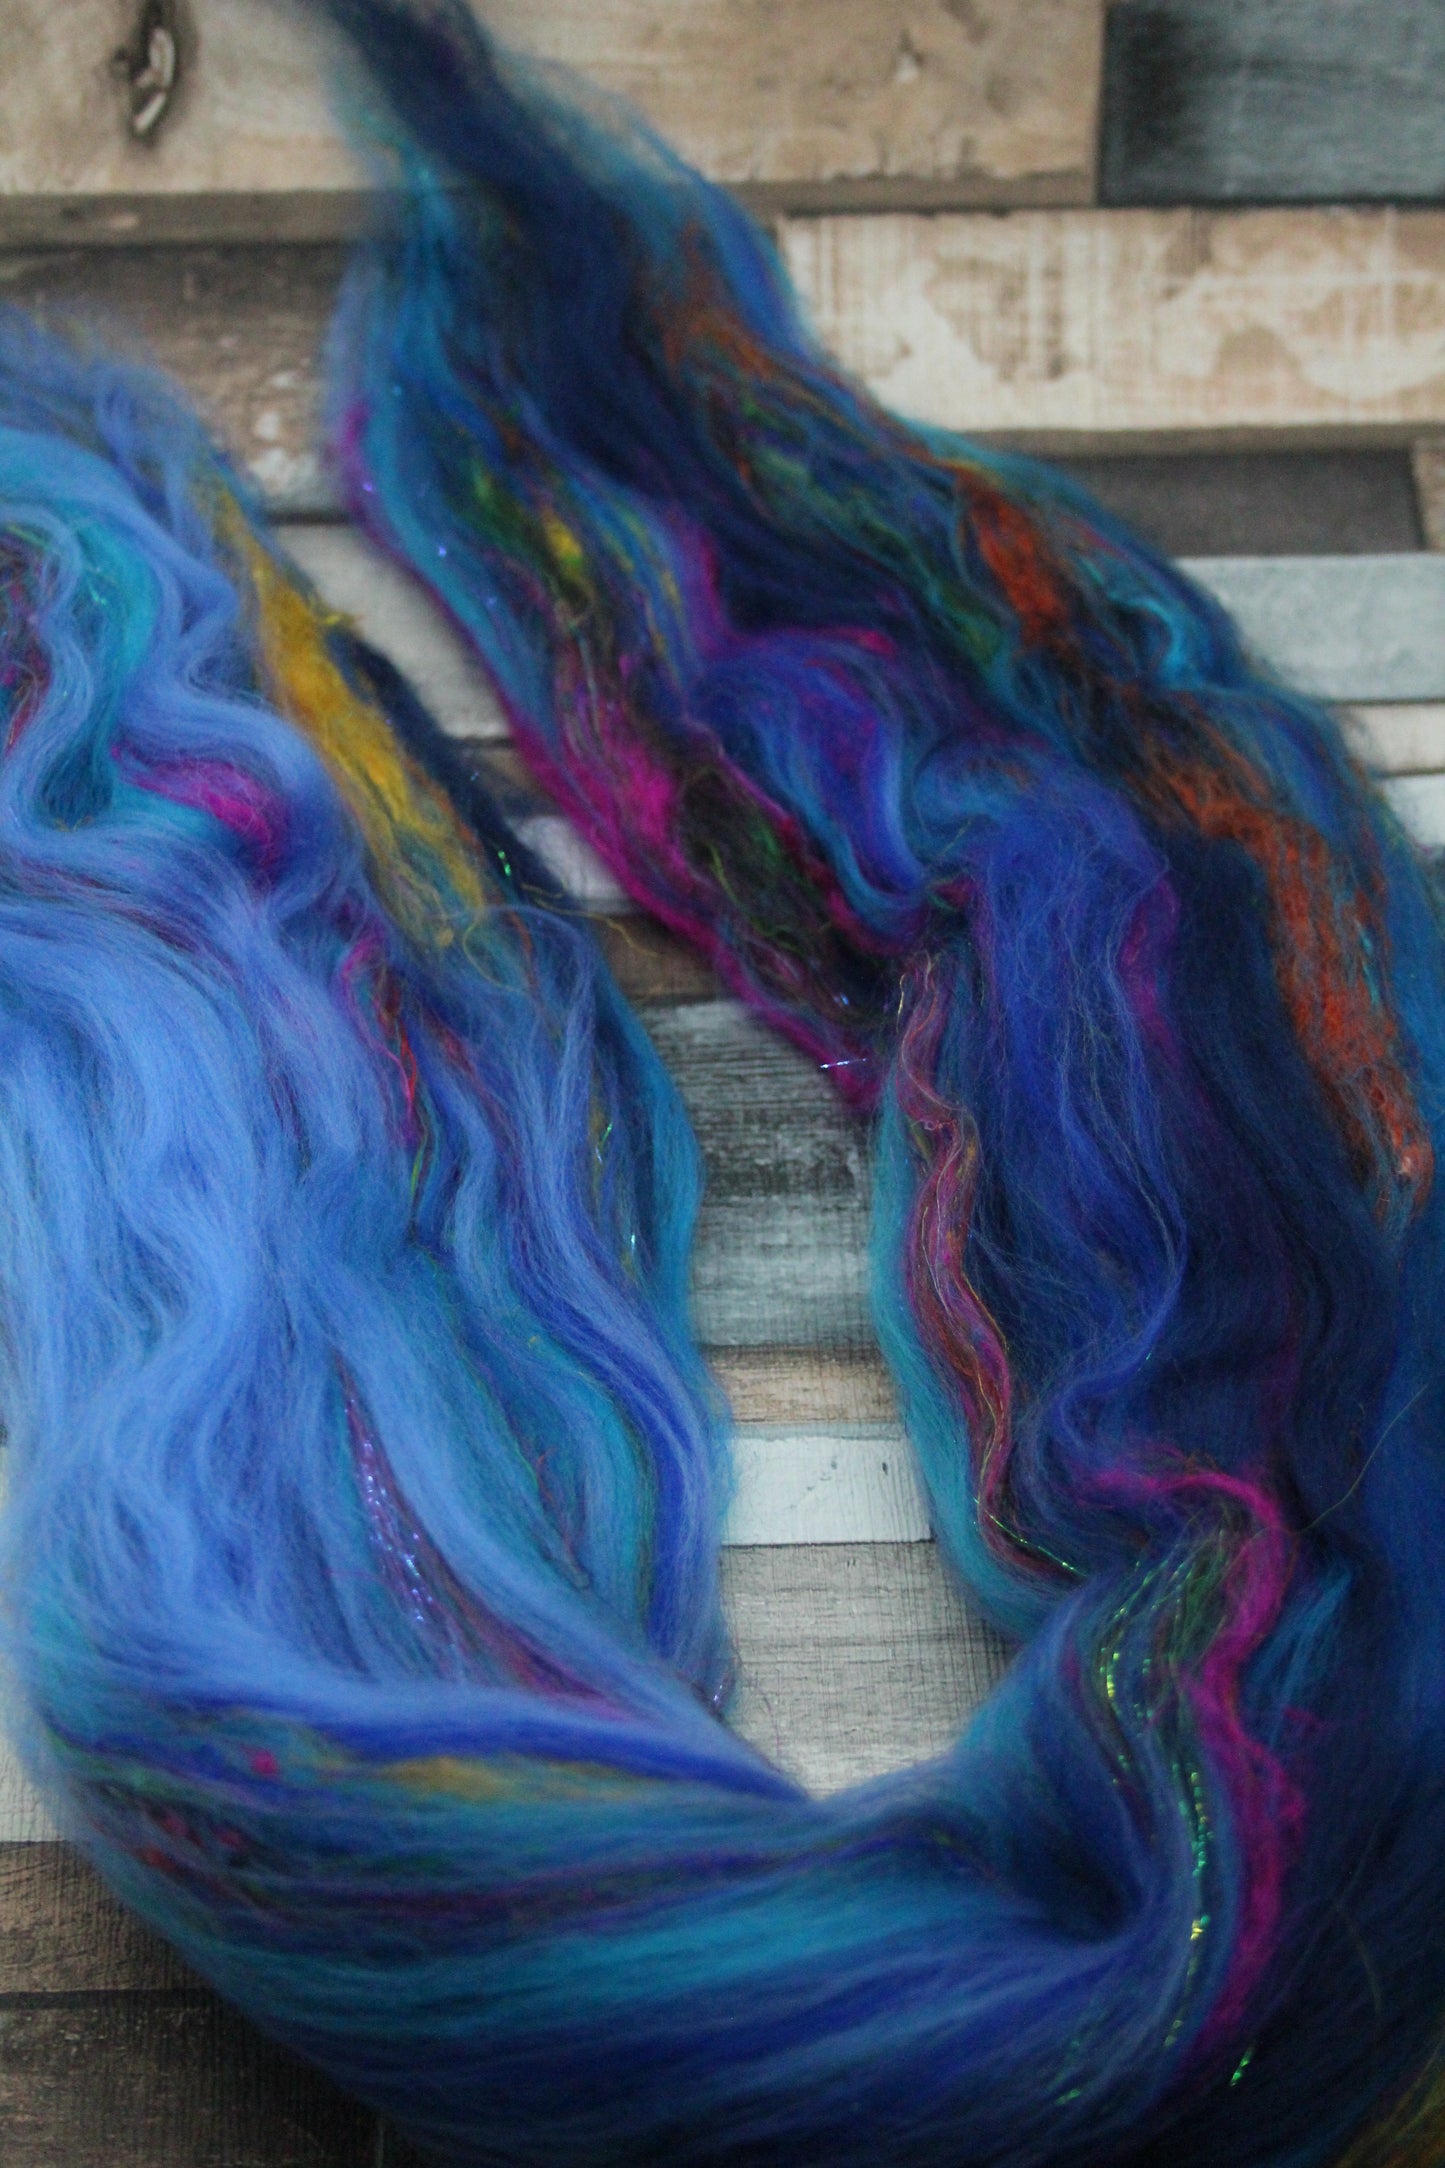 Merino Wool Blend - Blue - 30 grams / 1 oz  - Fibre for felting, weaving or spinning